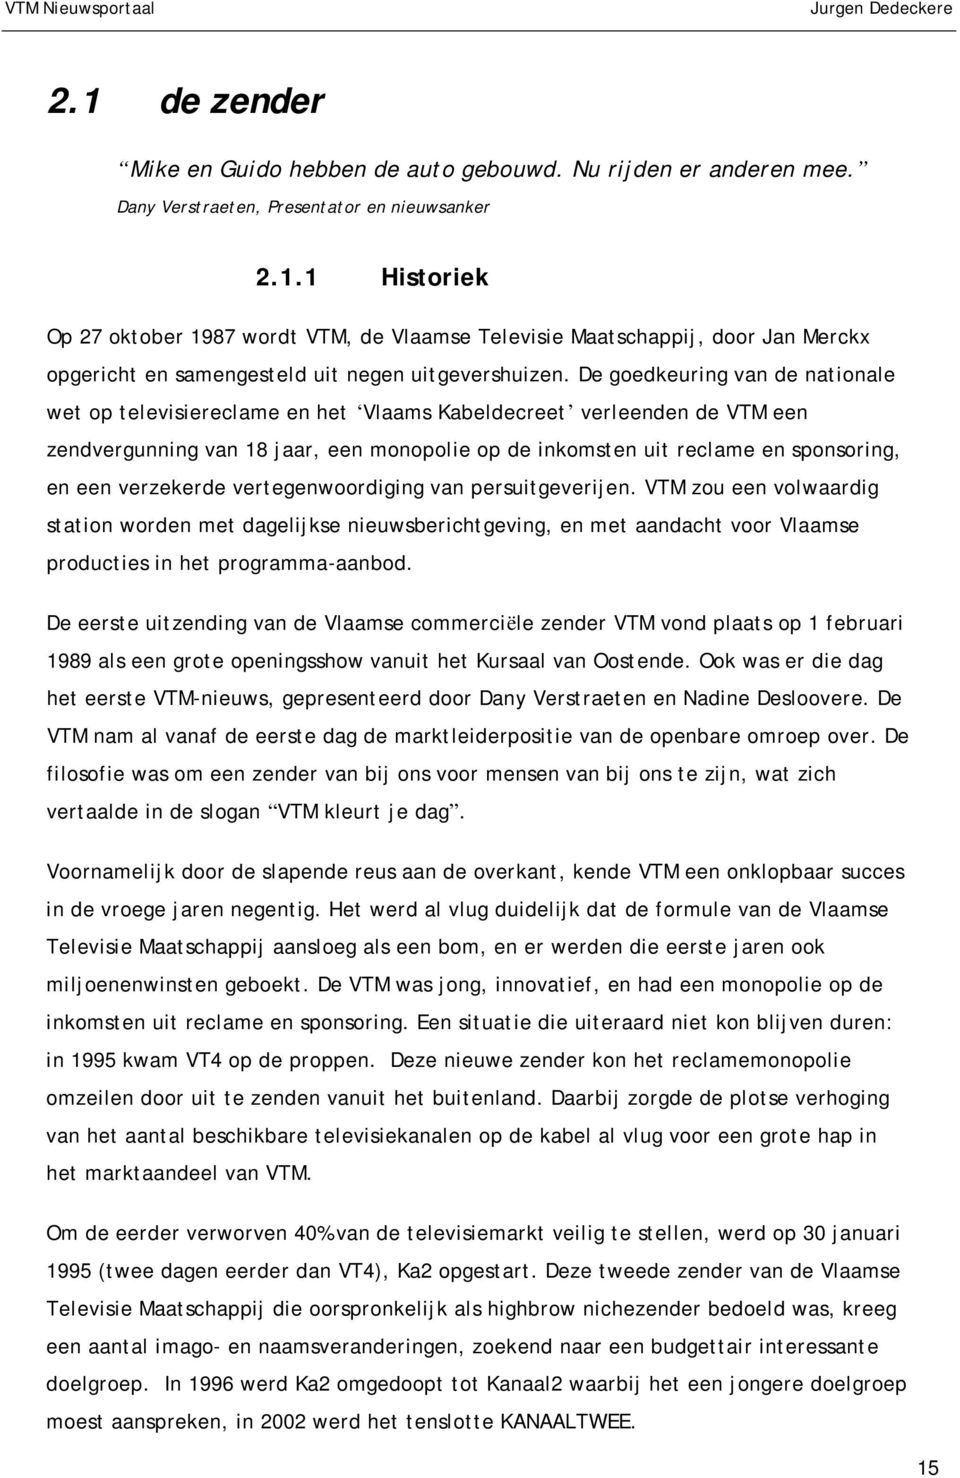 verzekerde vertegenwoordiging van persuitgeverijen. VTM zou een volwaardig station worden met dagelijkse nieuwsberichtgeving, en met aandacht voor Vlaamse producties in het programma-aanbod.